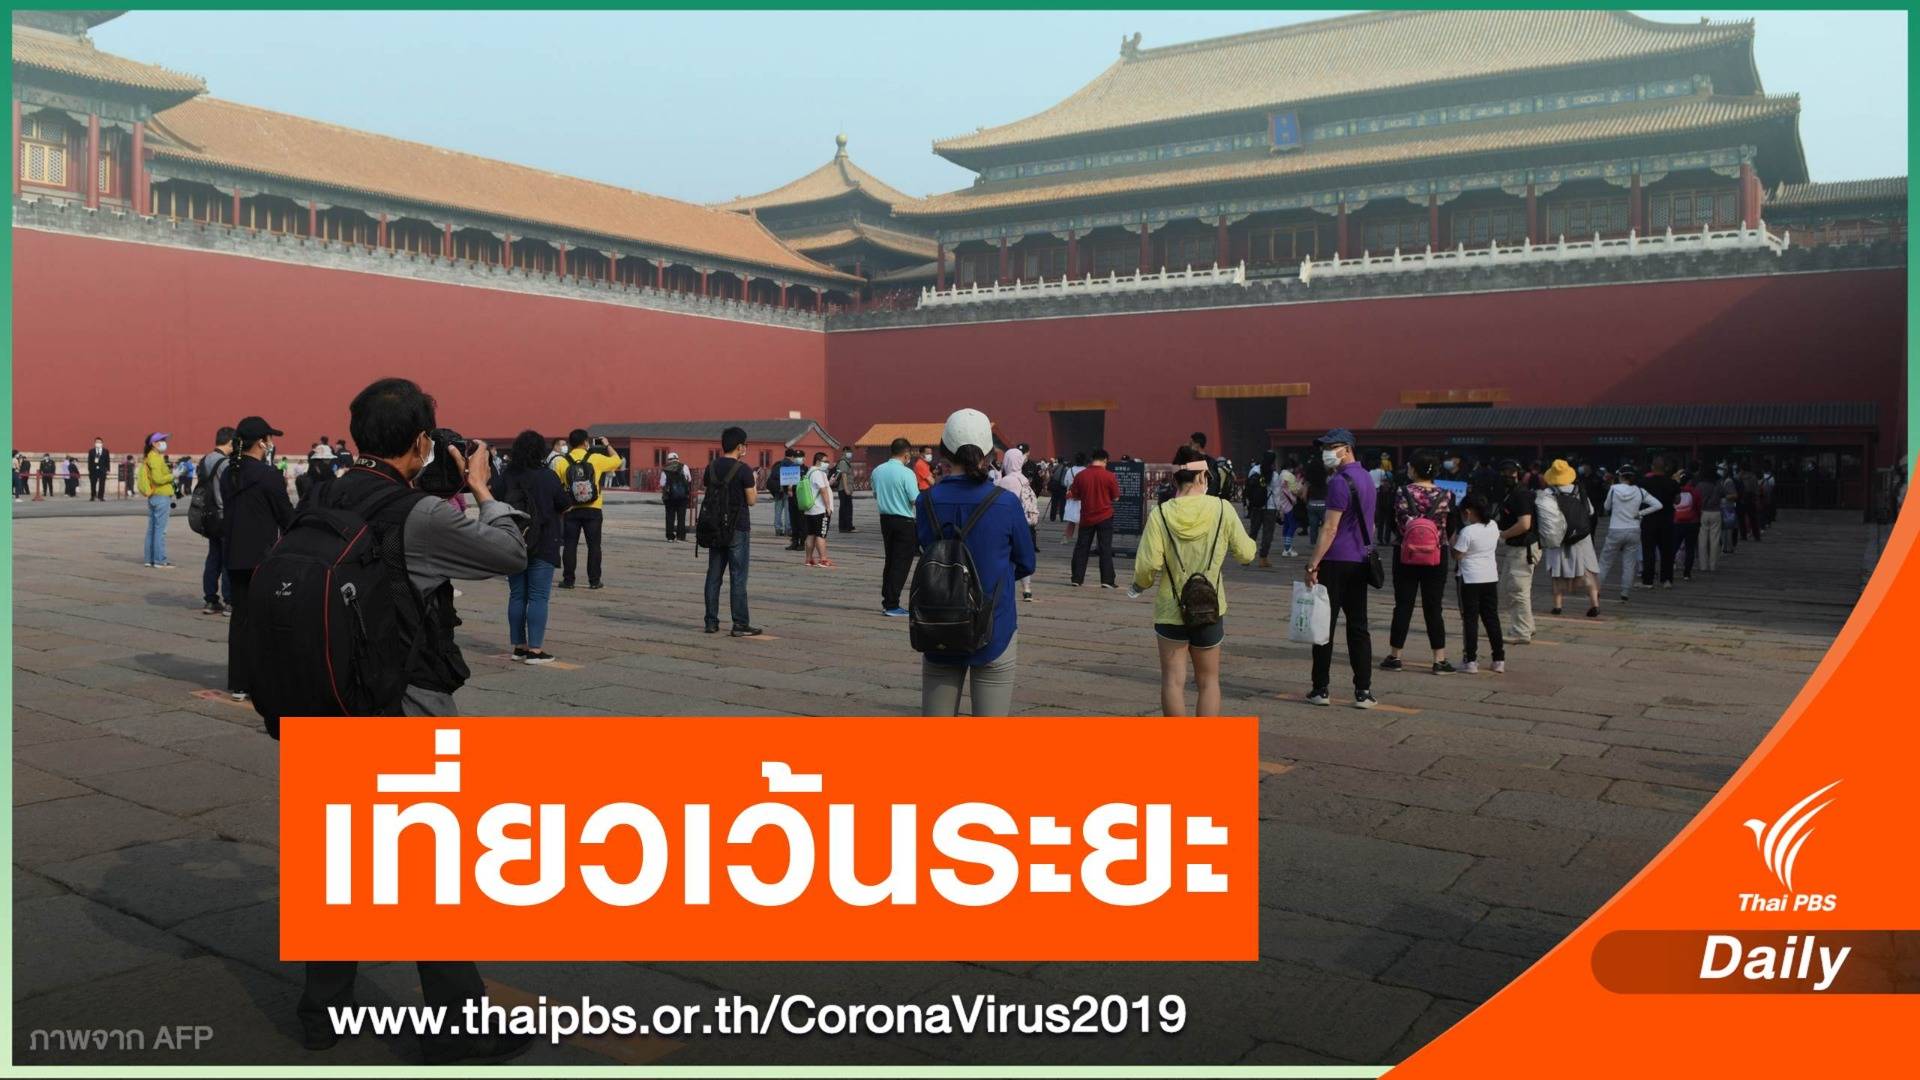 "พระราชวังต้องห้าม" จัดระเบียบนักท่องเที่ยวจีน ป้อง COVID-19 